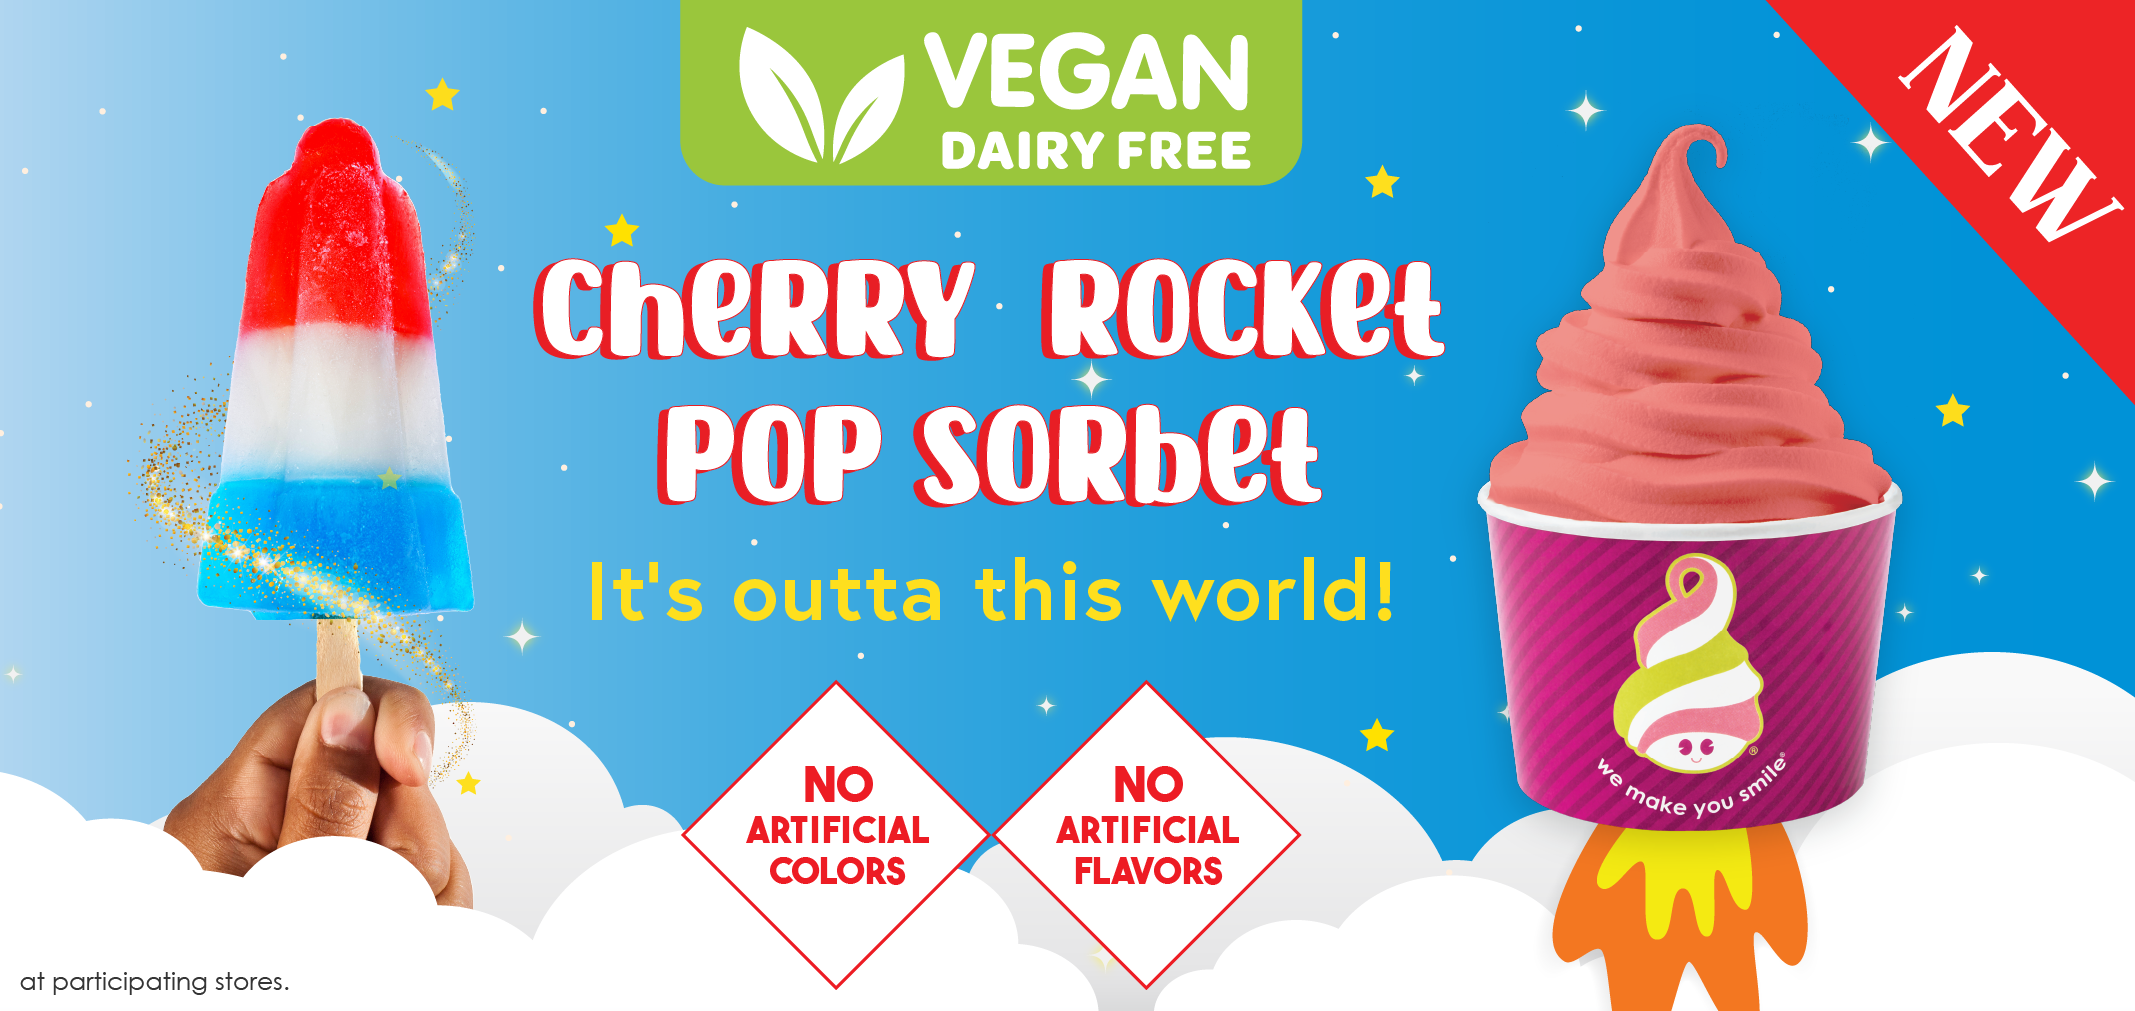 Vegan Cherry Rocket Pop Sorbet label image